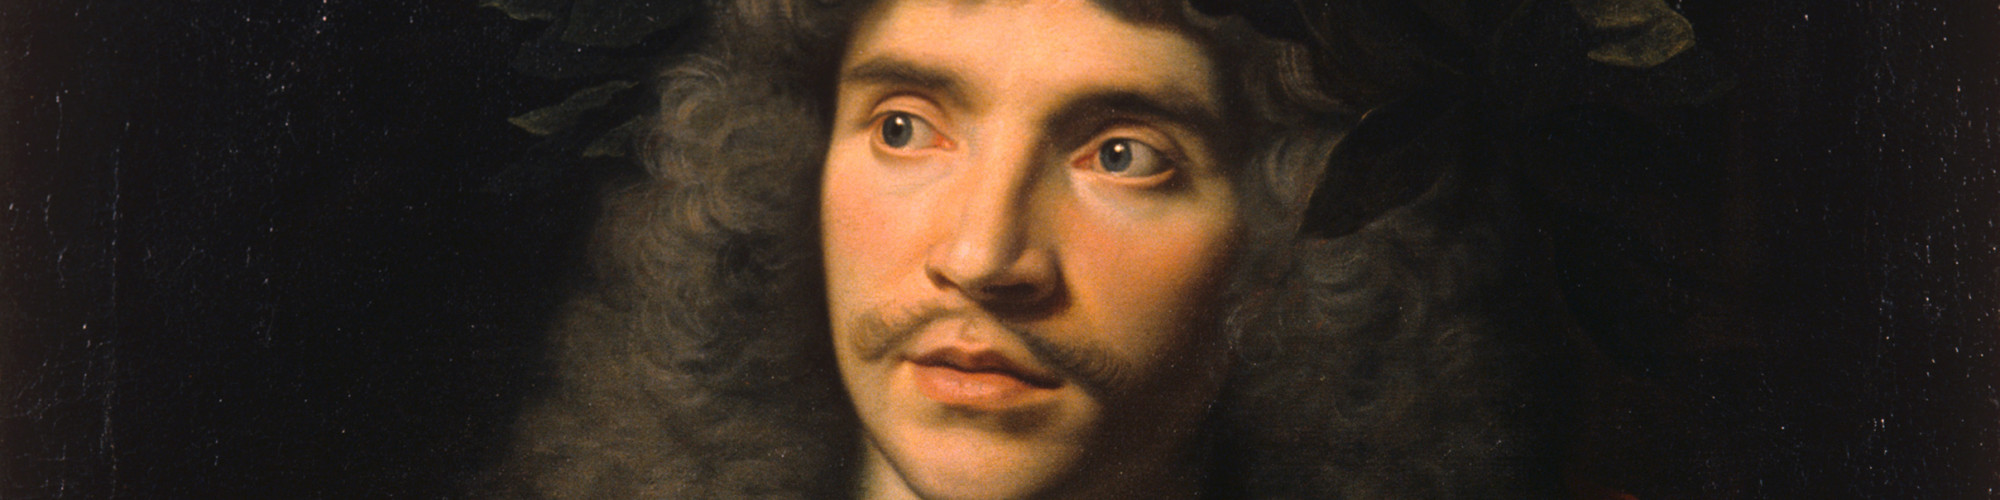 Nicolas Mignard, Molière dans le rôle de César pour La Mort de Pompée de Pierre Corneille, 1658